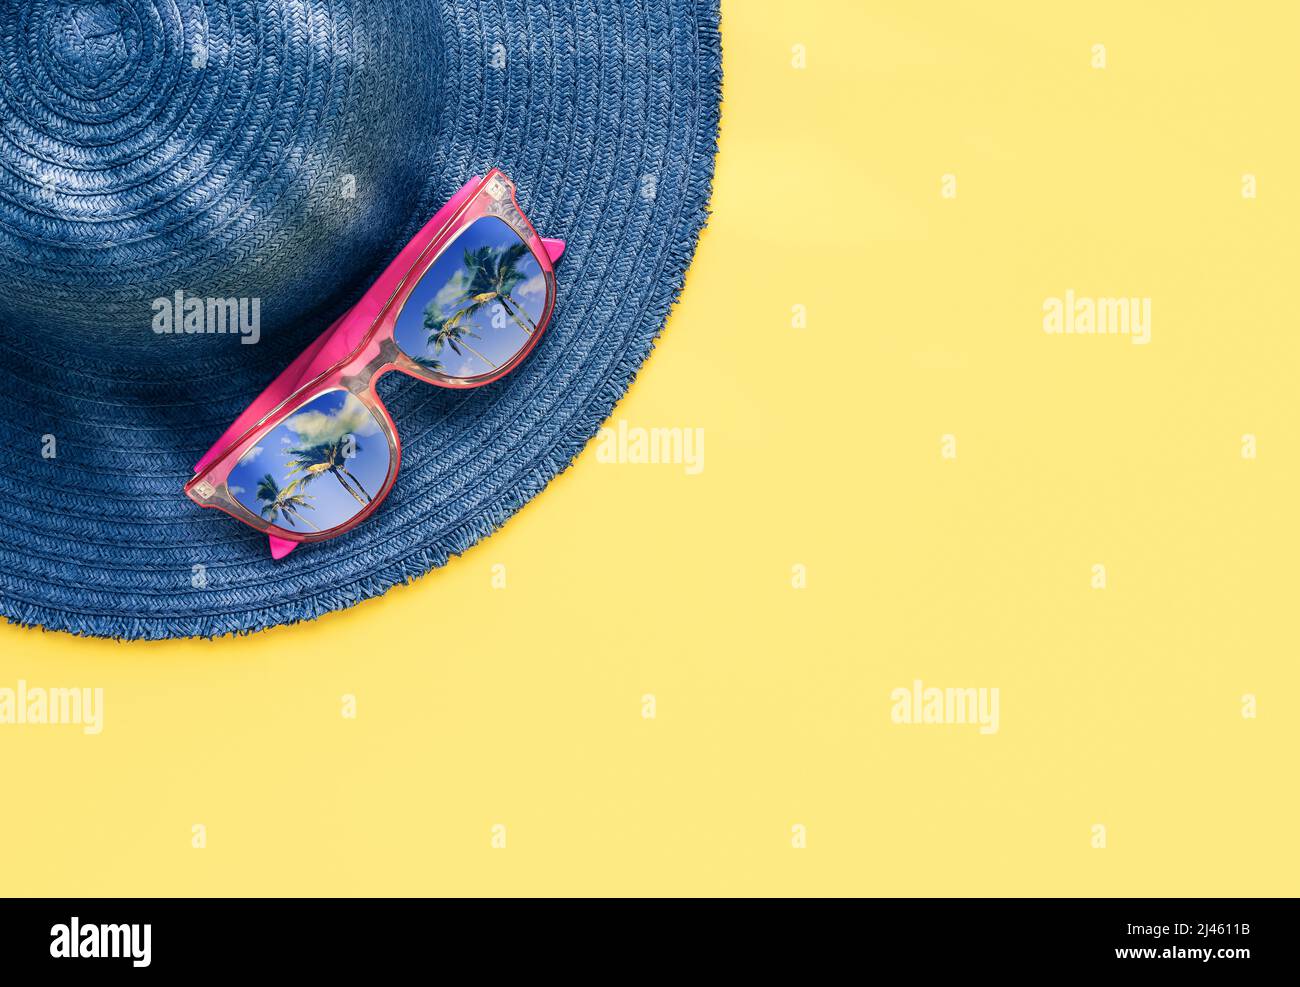 Concept de vacances d'été. Accessoires de plage, chapeau bleu et lunettes de soleil avec réflexion de palmier sur fond jaune. Vue de dessus, espace de copie Banque D'Images